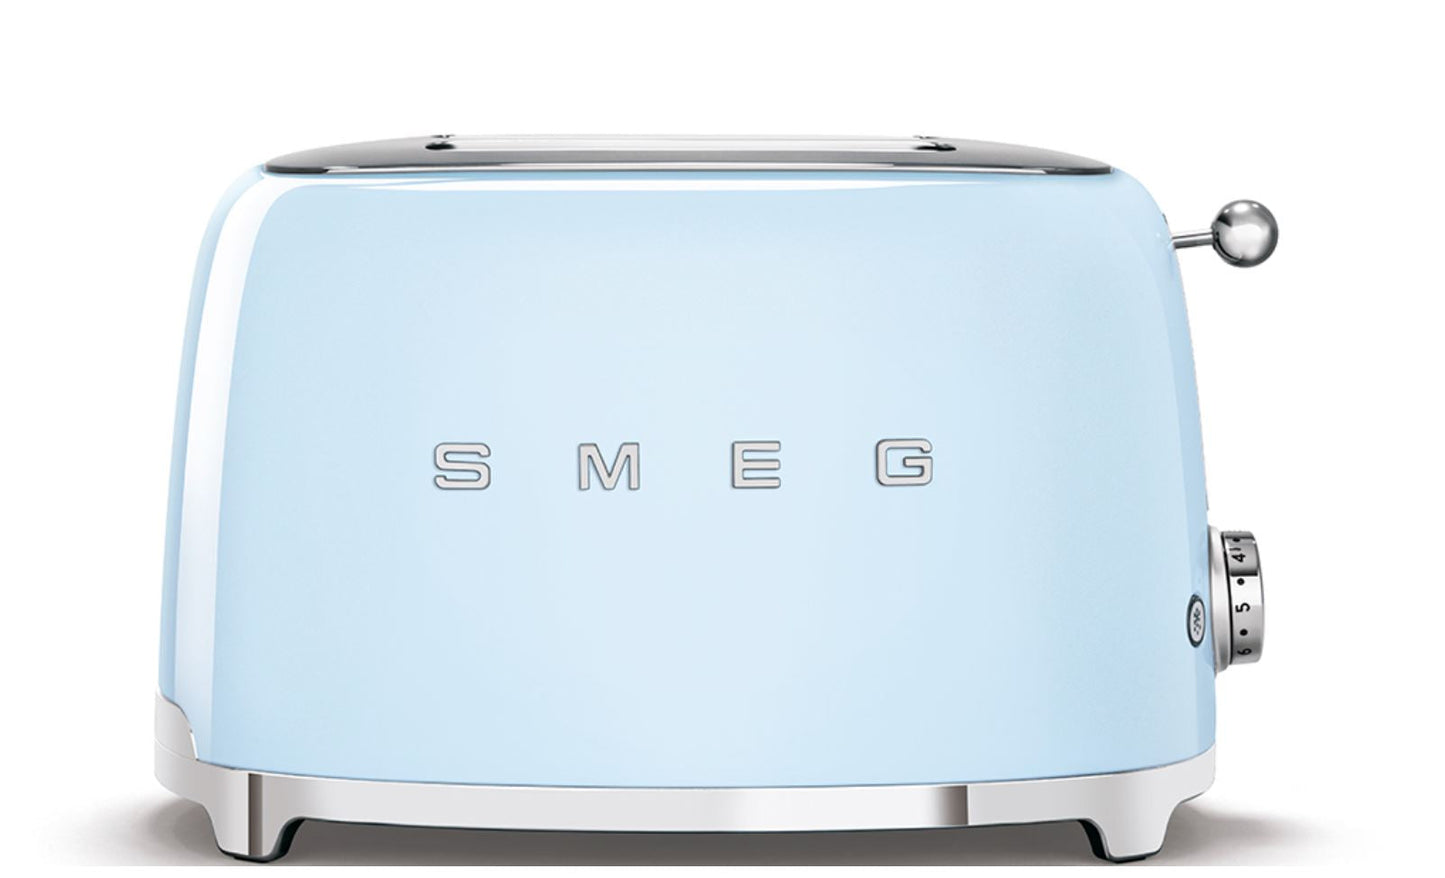 SMEG Retro-Style 4 Slice Toaster